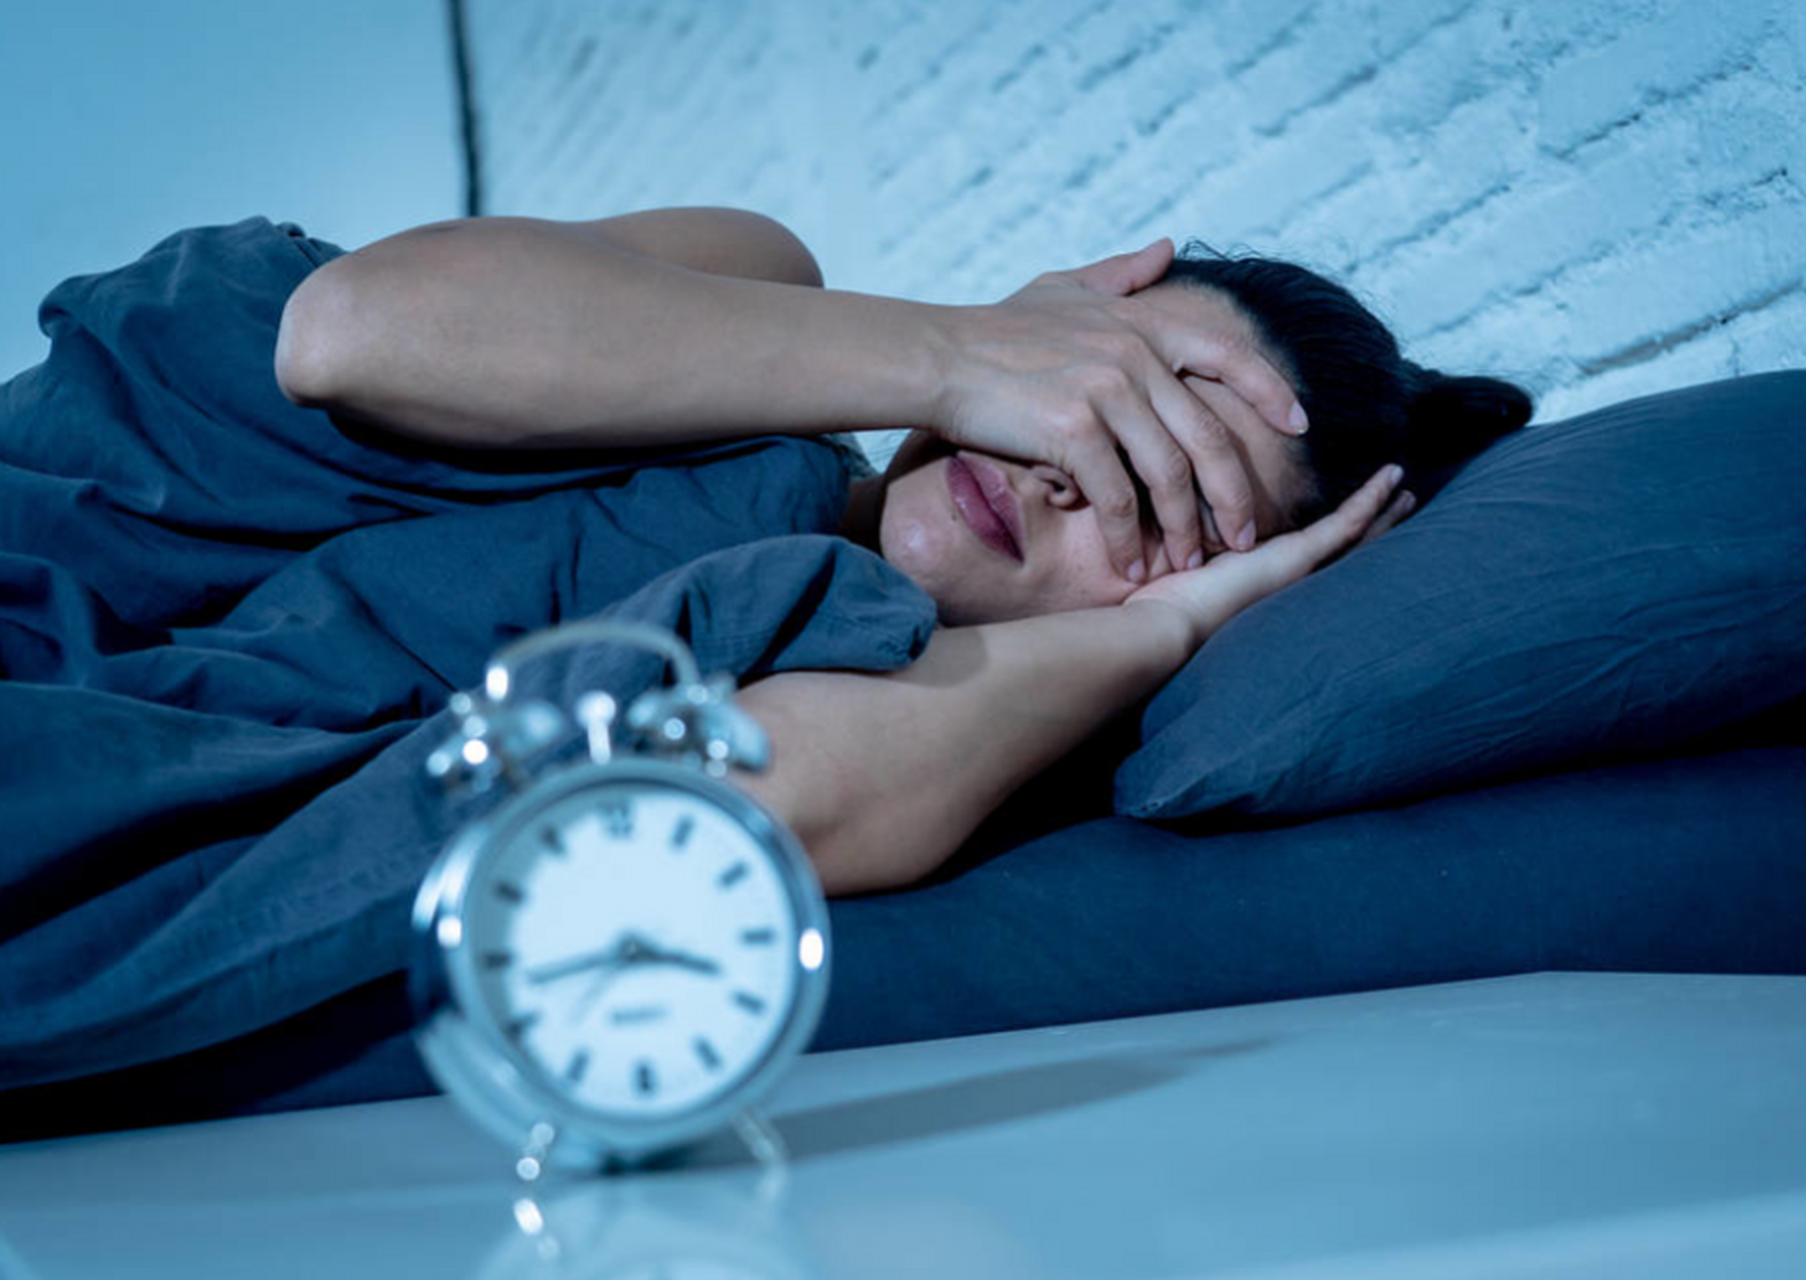 熬夜是指为了完成某种任务而错过正常的睡眠时间,导致睡眠不足